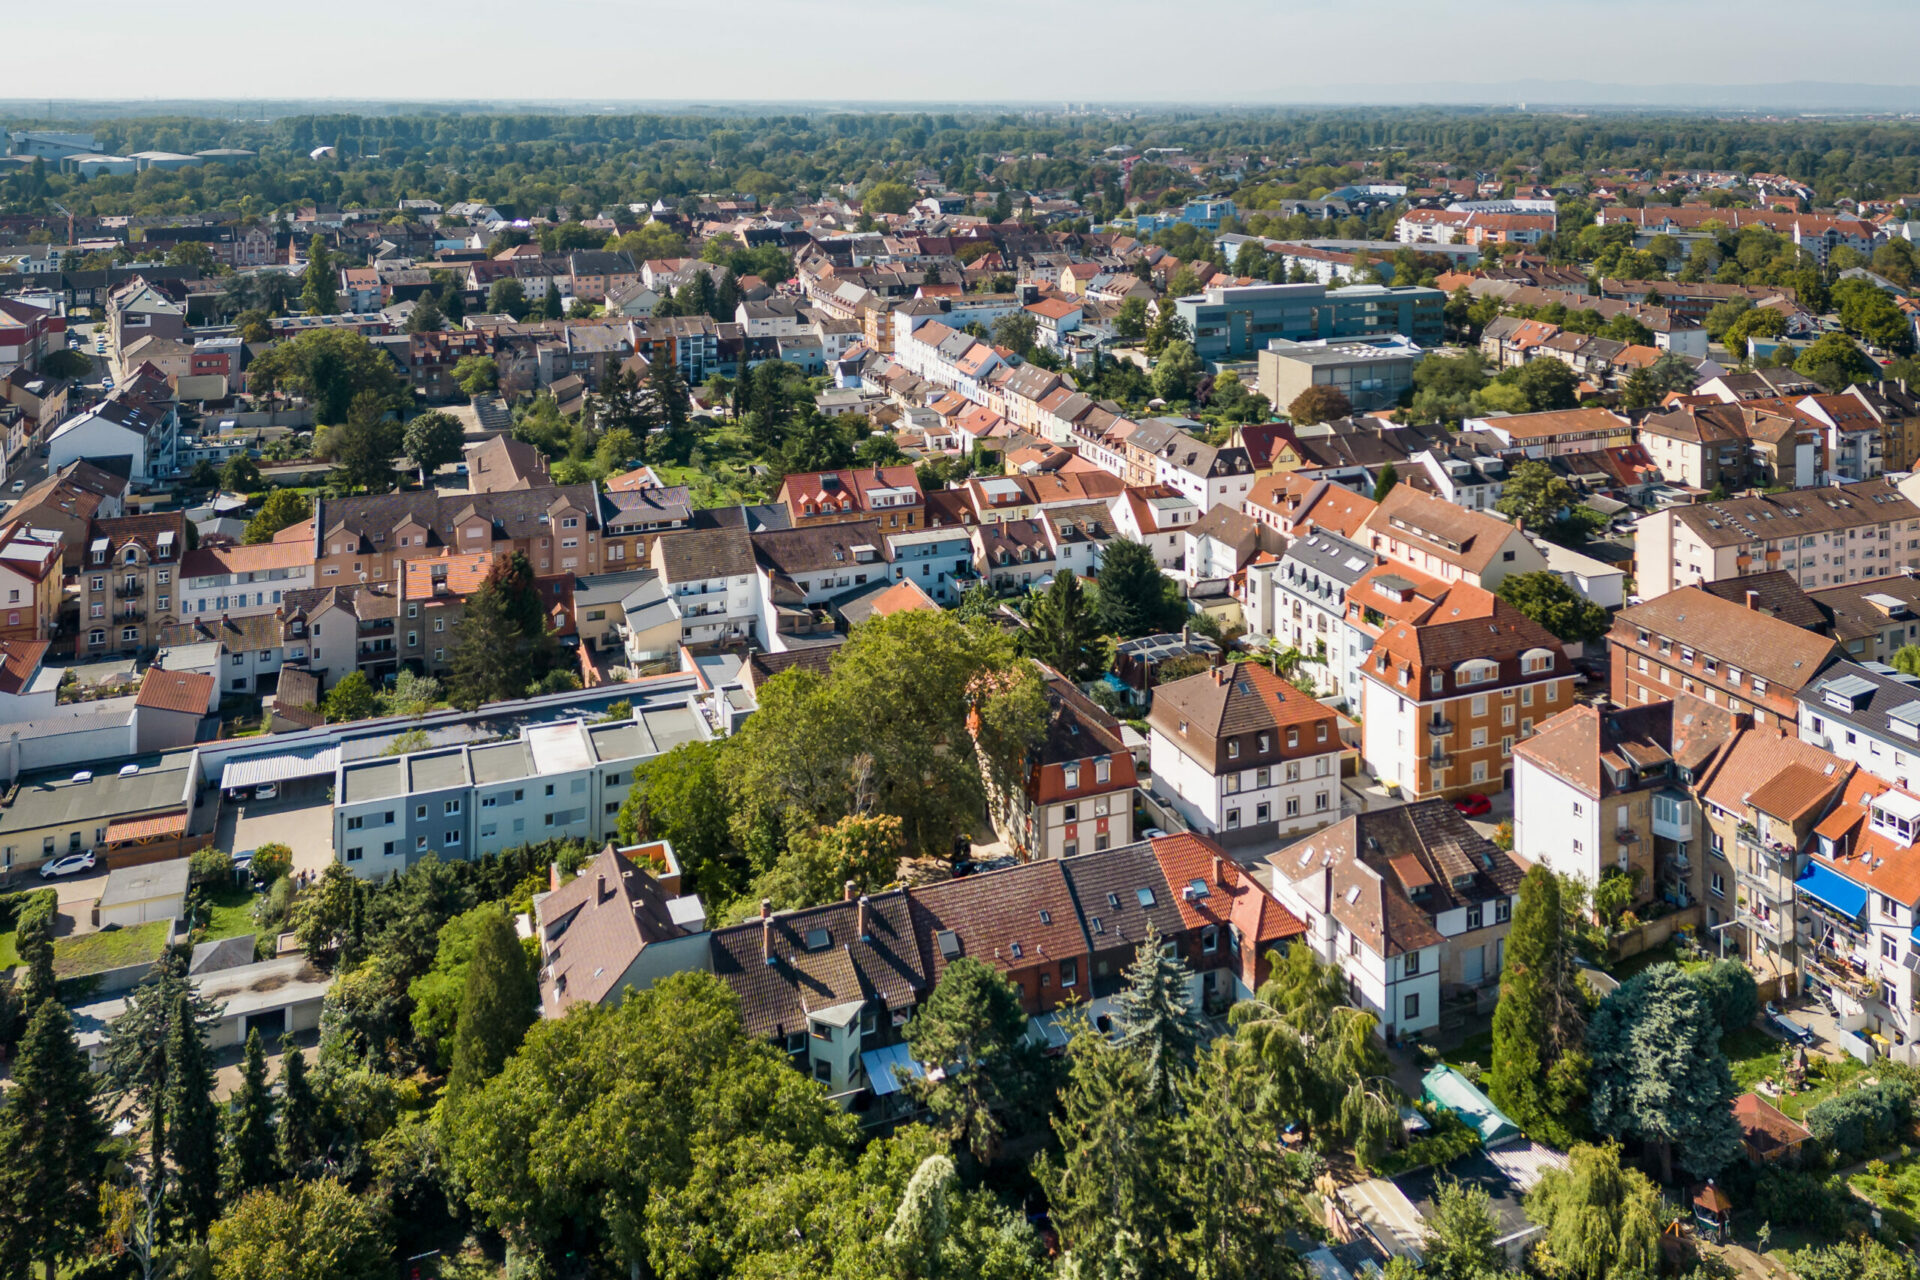 Luftaufnahme von Neckarau mit dichter Wohn- und Geschäftsbebauung, durchzogen von Straßen und umgeben von Grün.